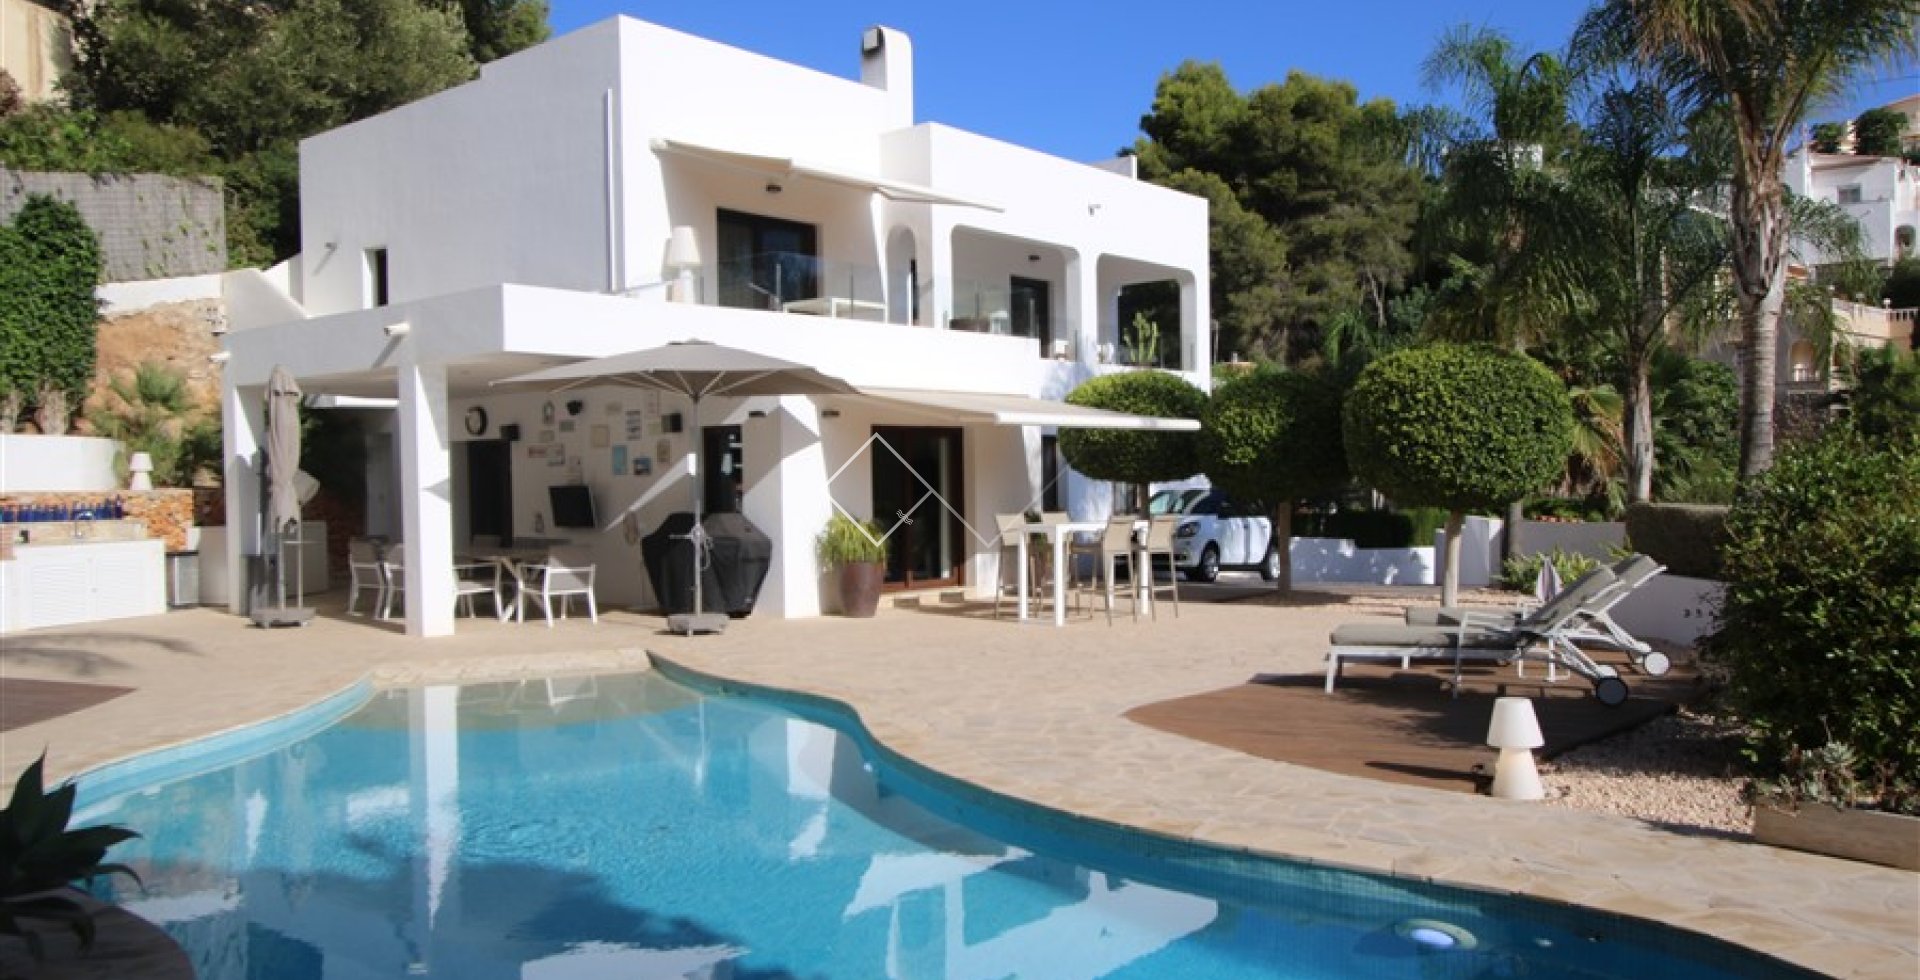 Villa Ibiza à vendre à Benissa avec piscine chauffée